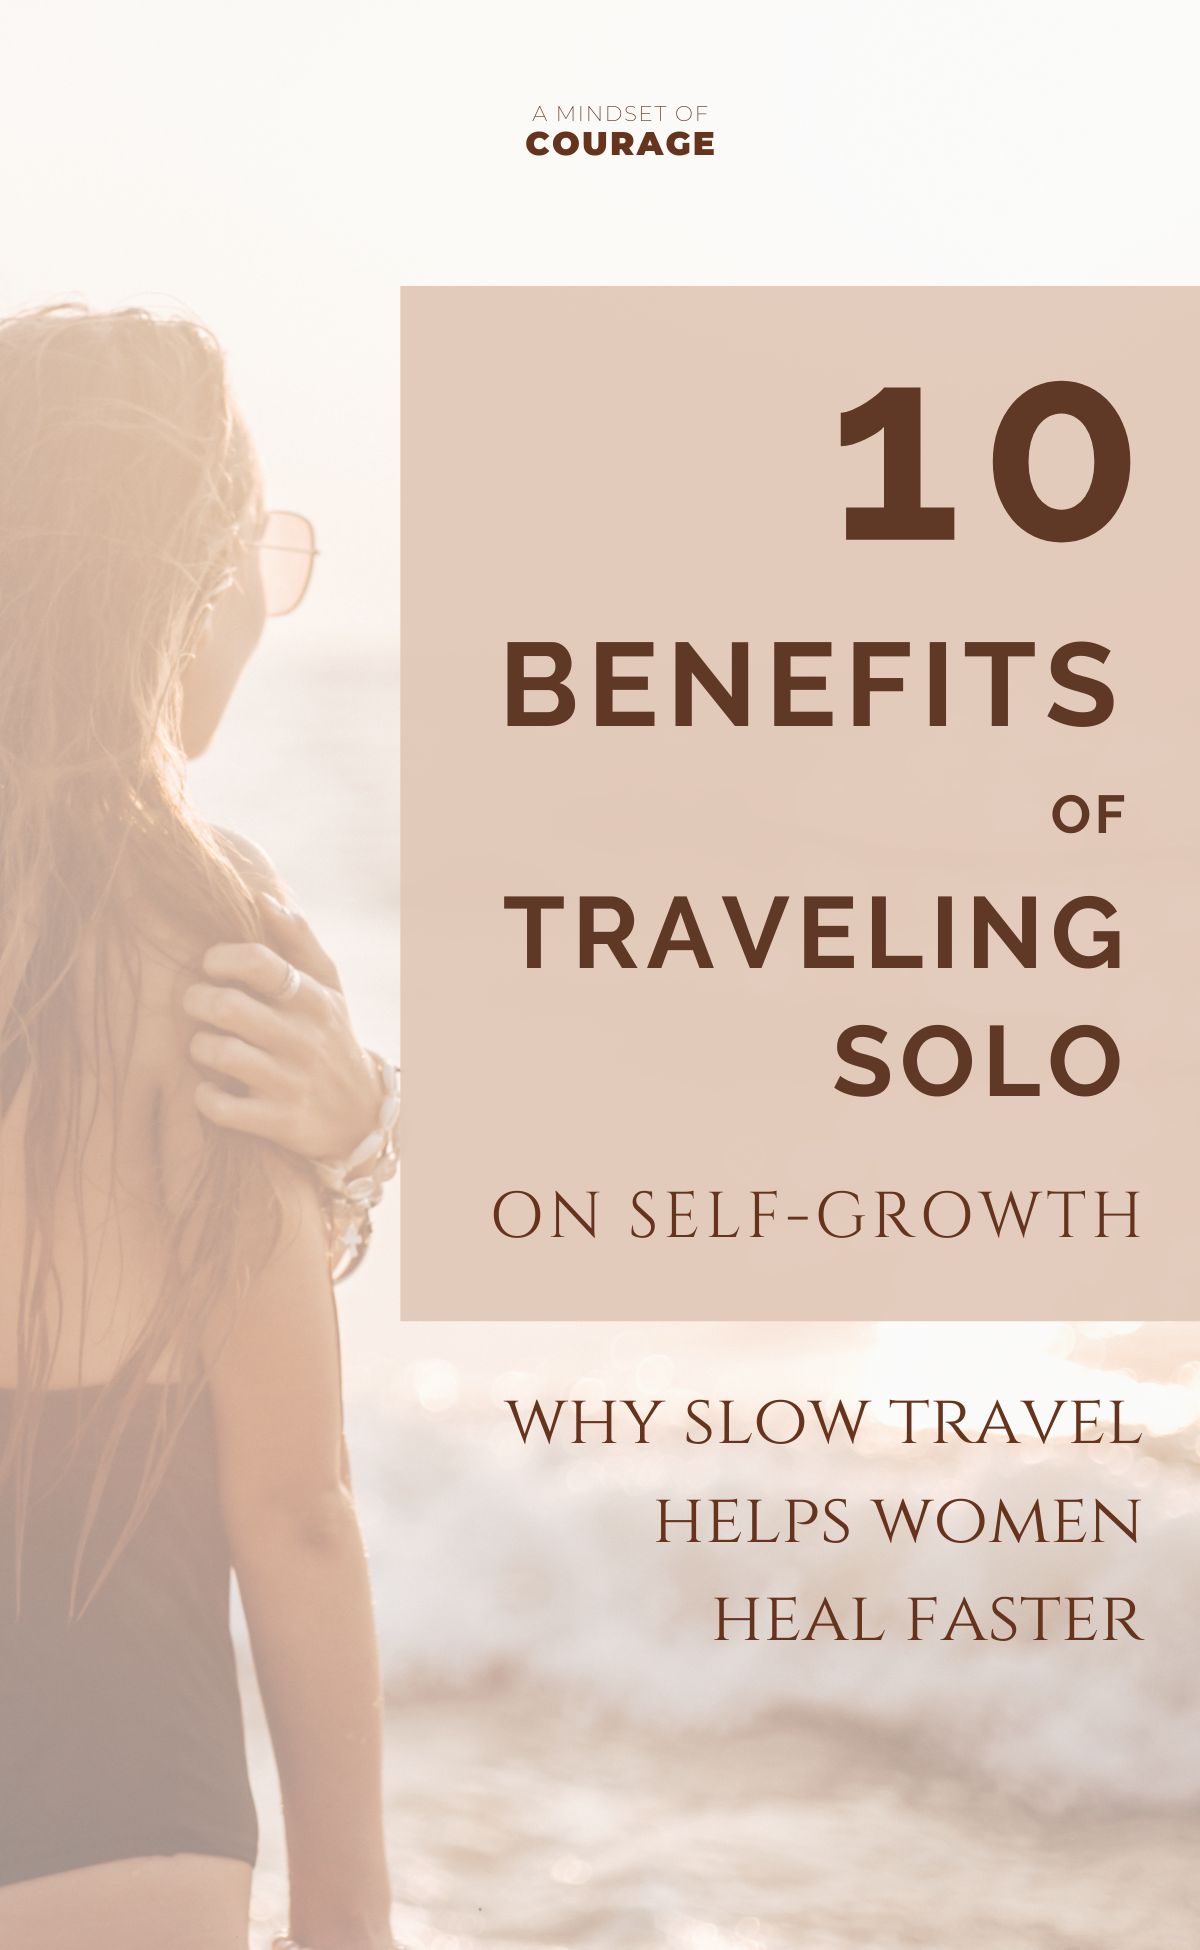 10 preuves que voyager en solo accélère le healing (femme)